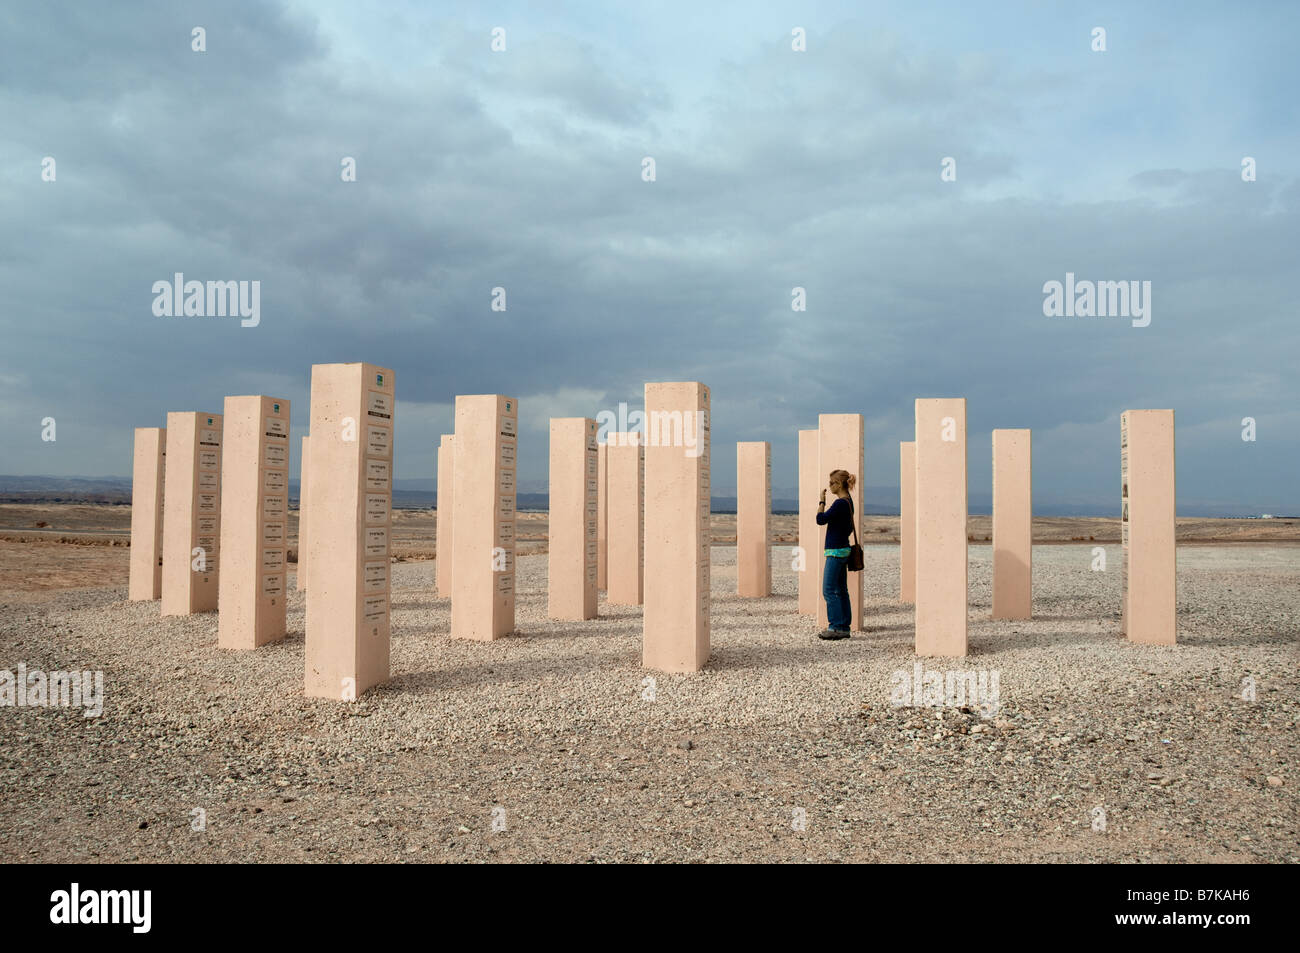 Memorial Monuments near Moshav Idan in the Arava Valley Stock Photo